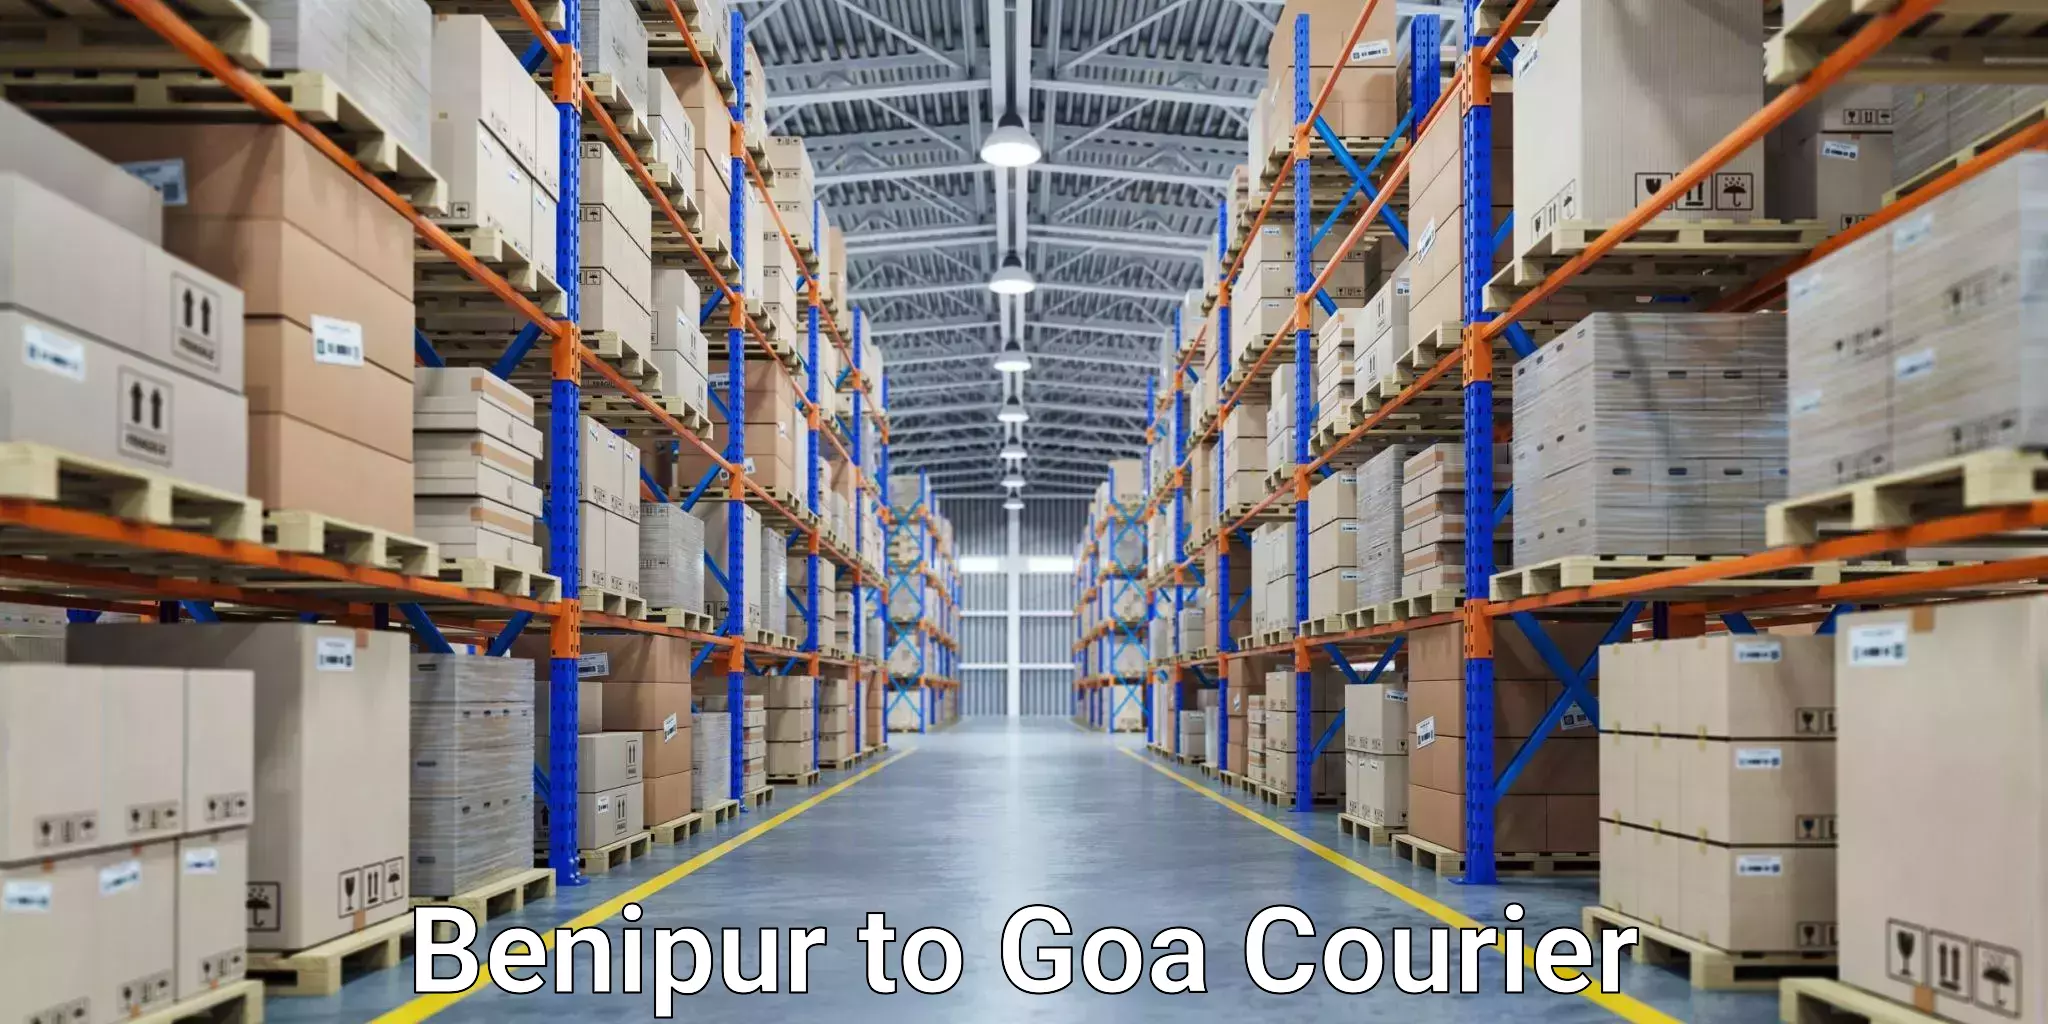 Global logistics network Benipur to Goa